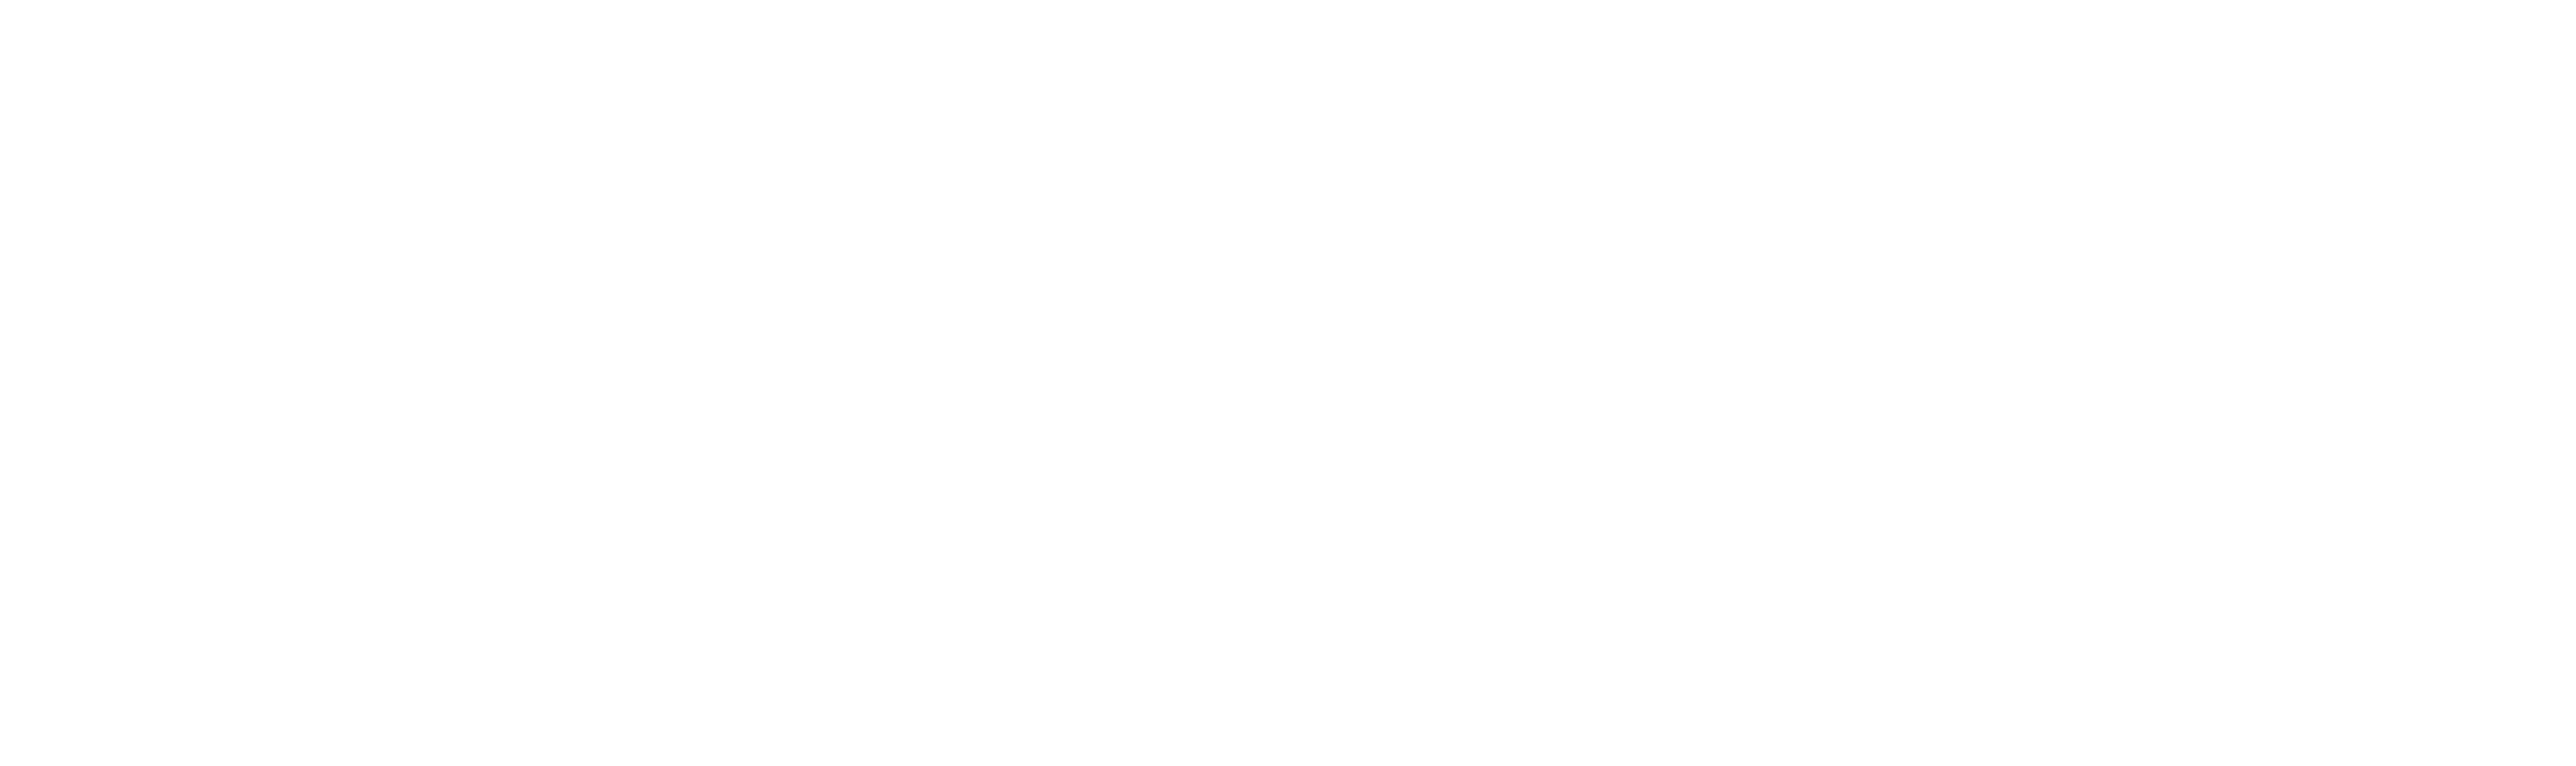 JASTER™ (white)-1